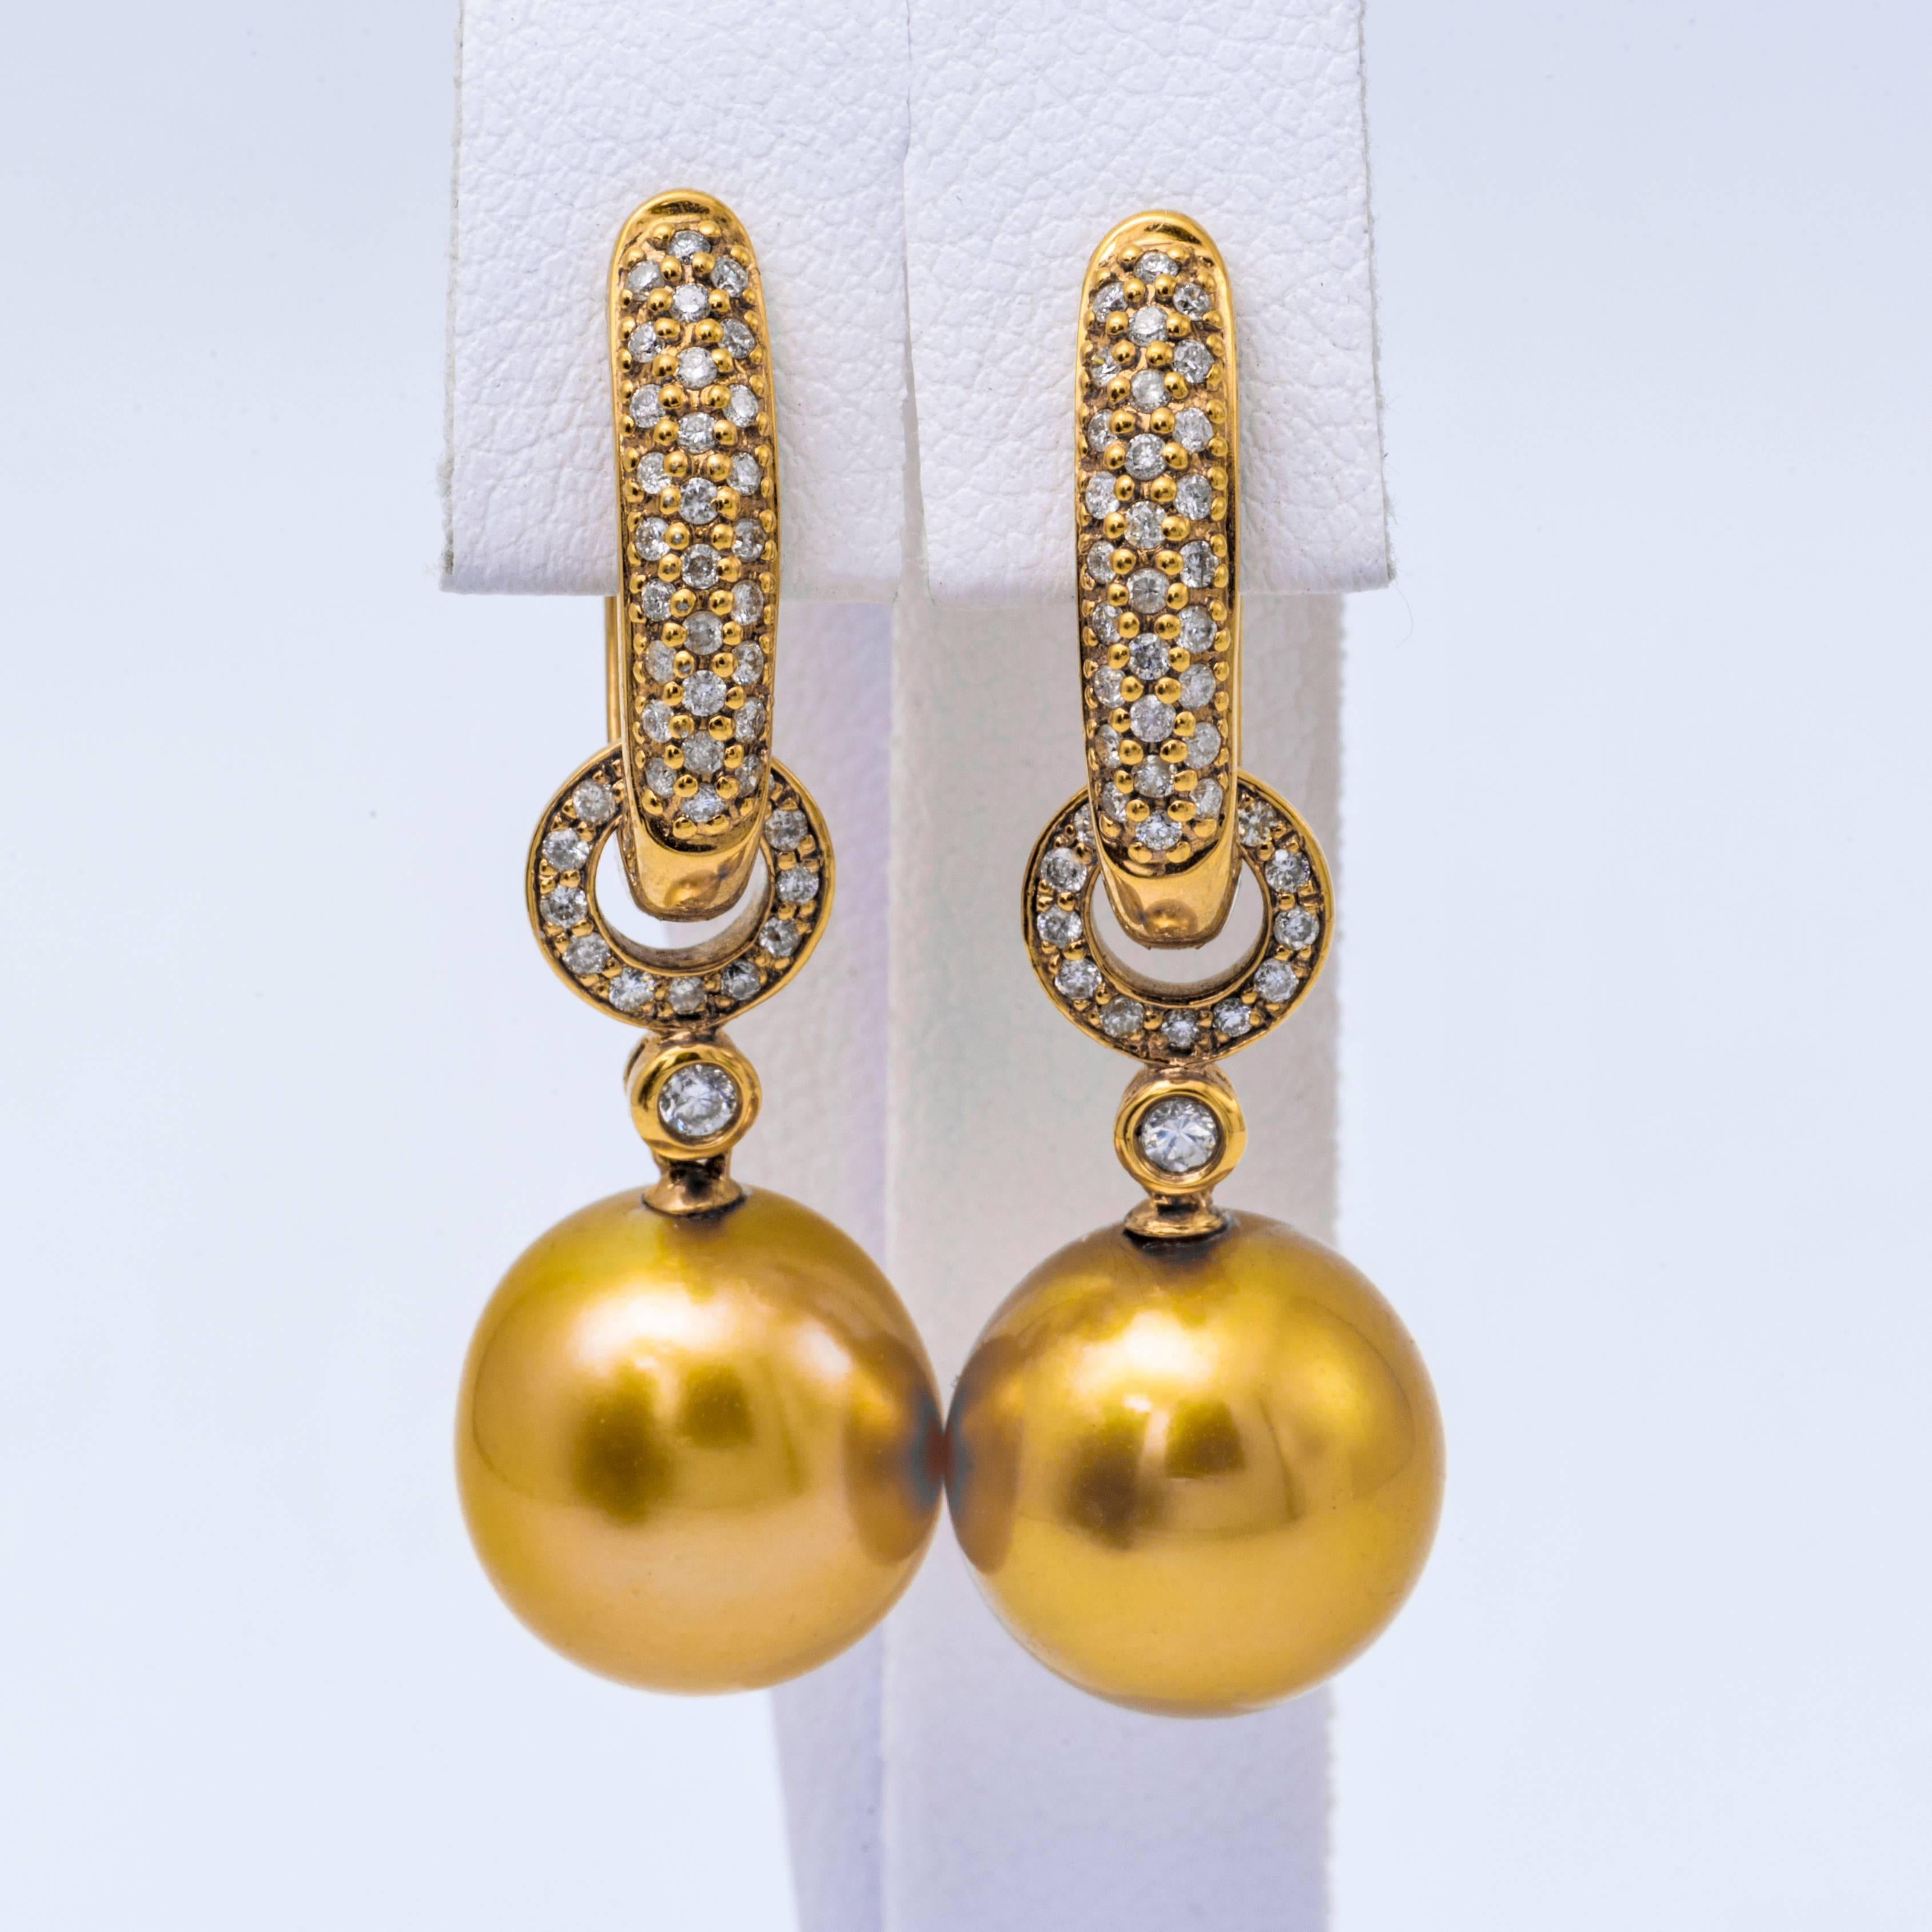 tropfenohrringe aus 18 Karat Gelbgold mit zwei goldenen Perlen von 11-12 mm, flankiert von runden Brillanten. 

Perlenqualität	AAA
Lüster	AAA, Ausgezeichnet
Perlmutt	Sehr dick
